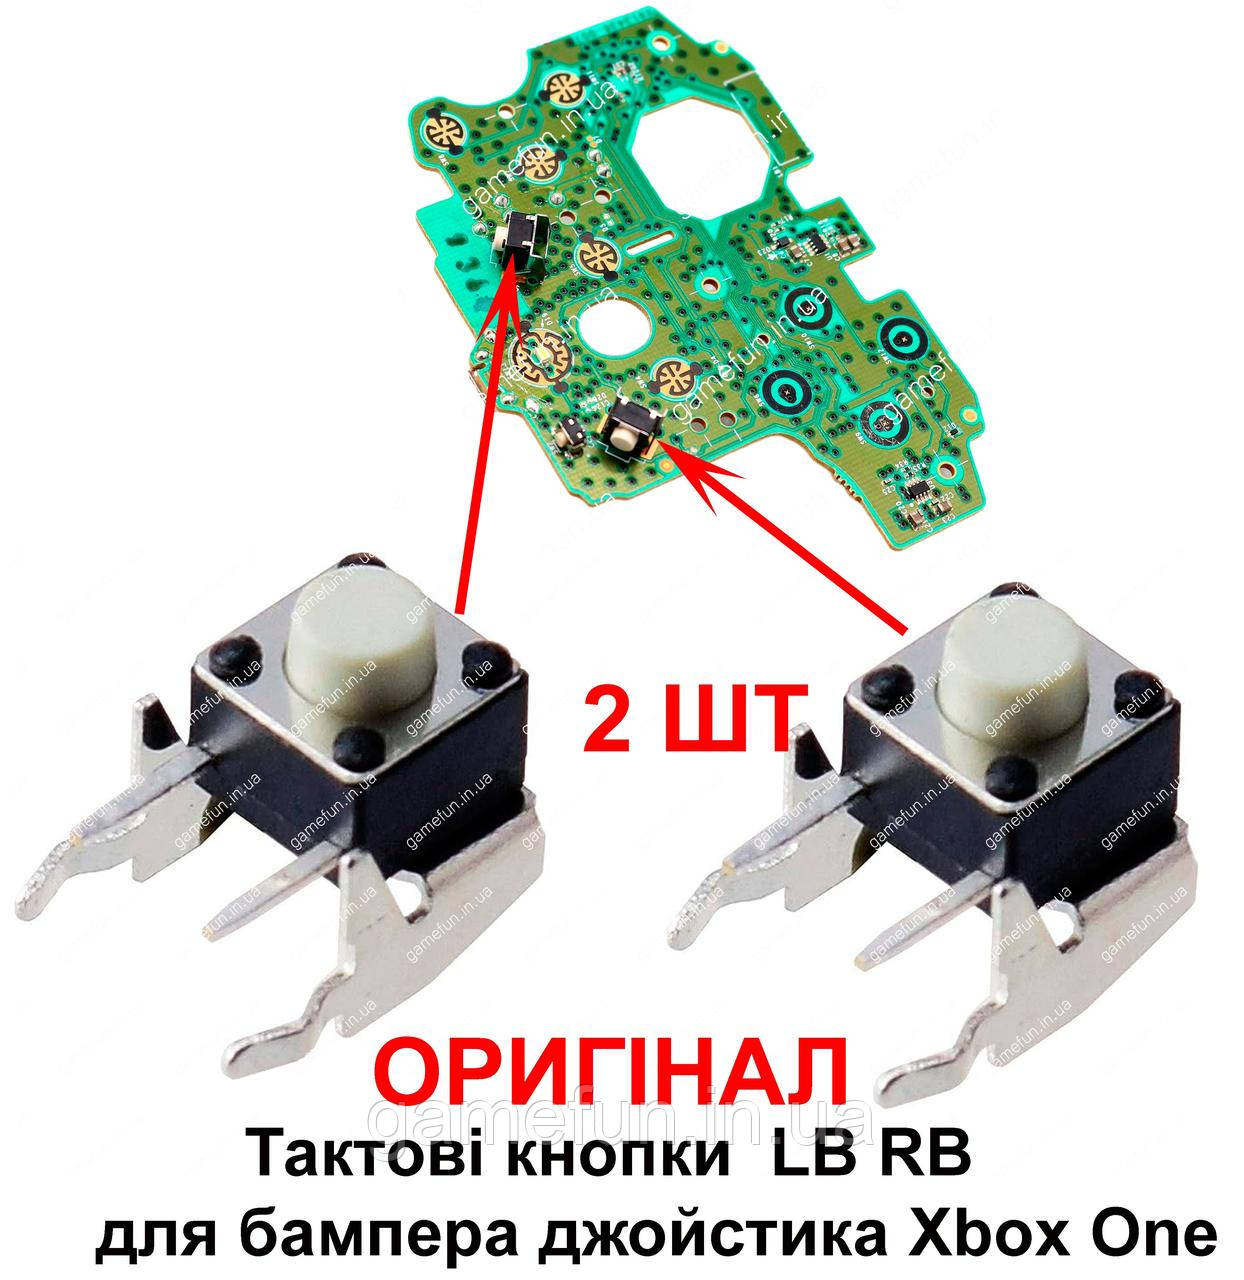 Тактові кнопки LB RB для бампера джойстика Xbox One (мікрокнопки) (Оригінал) 2 ШТ